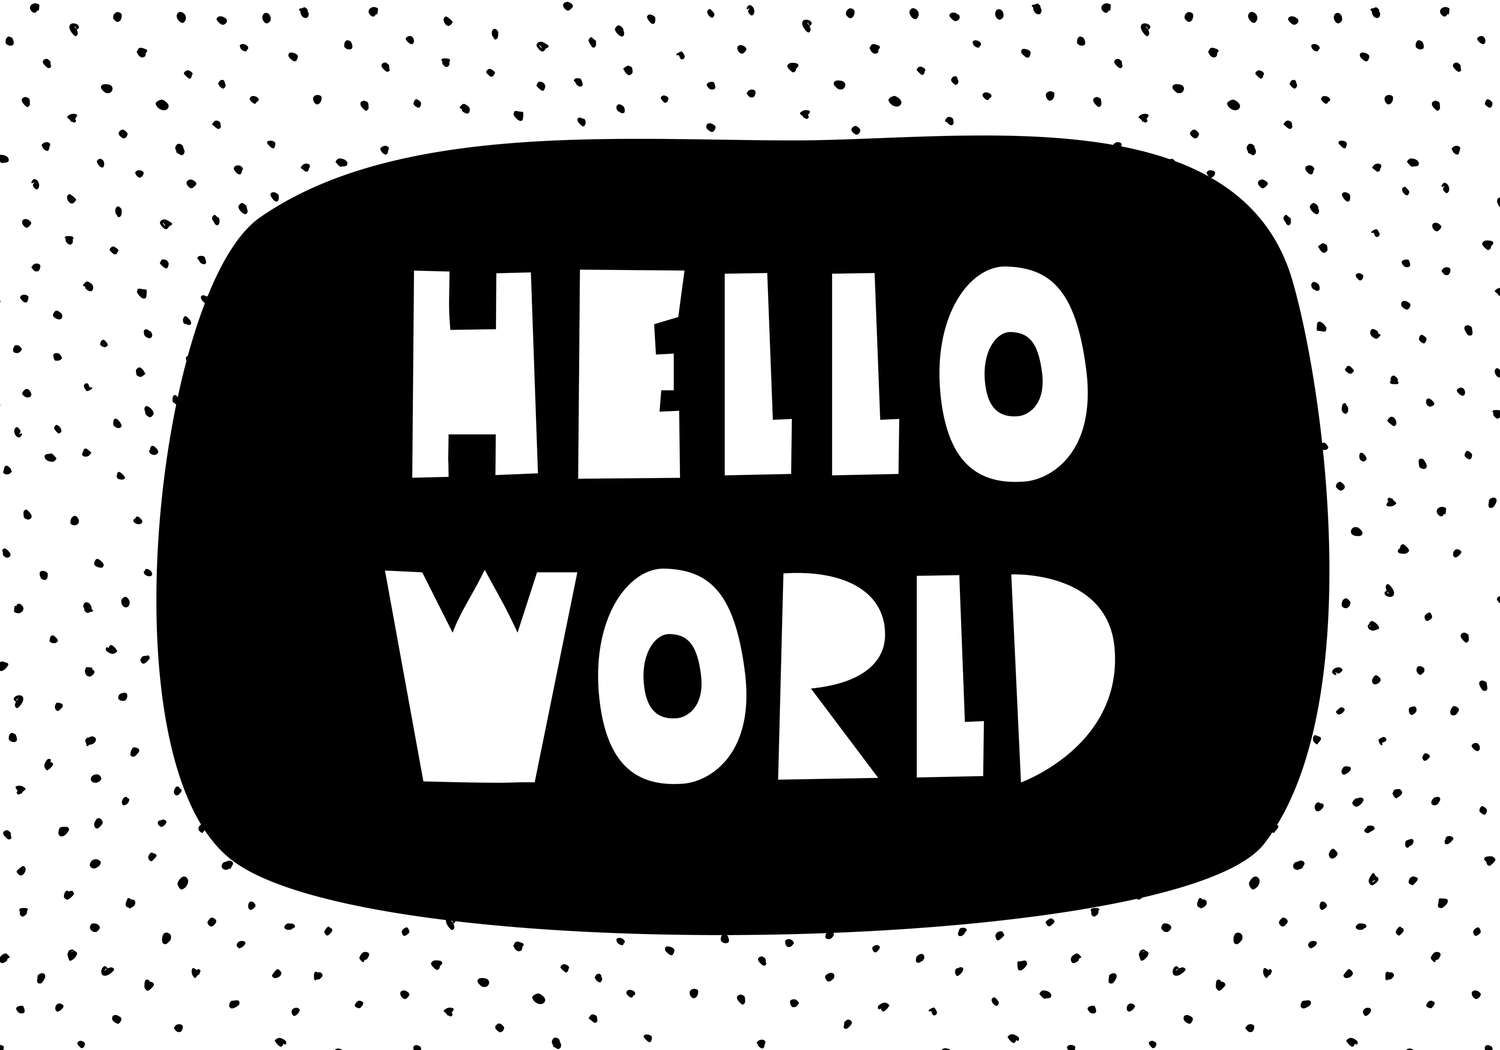             Digital behang voor kinderkamer met opschrift "Hello World" - Glad & parelmoervlies
        